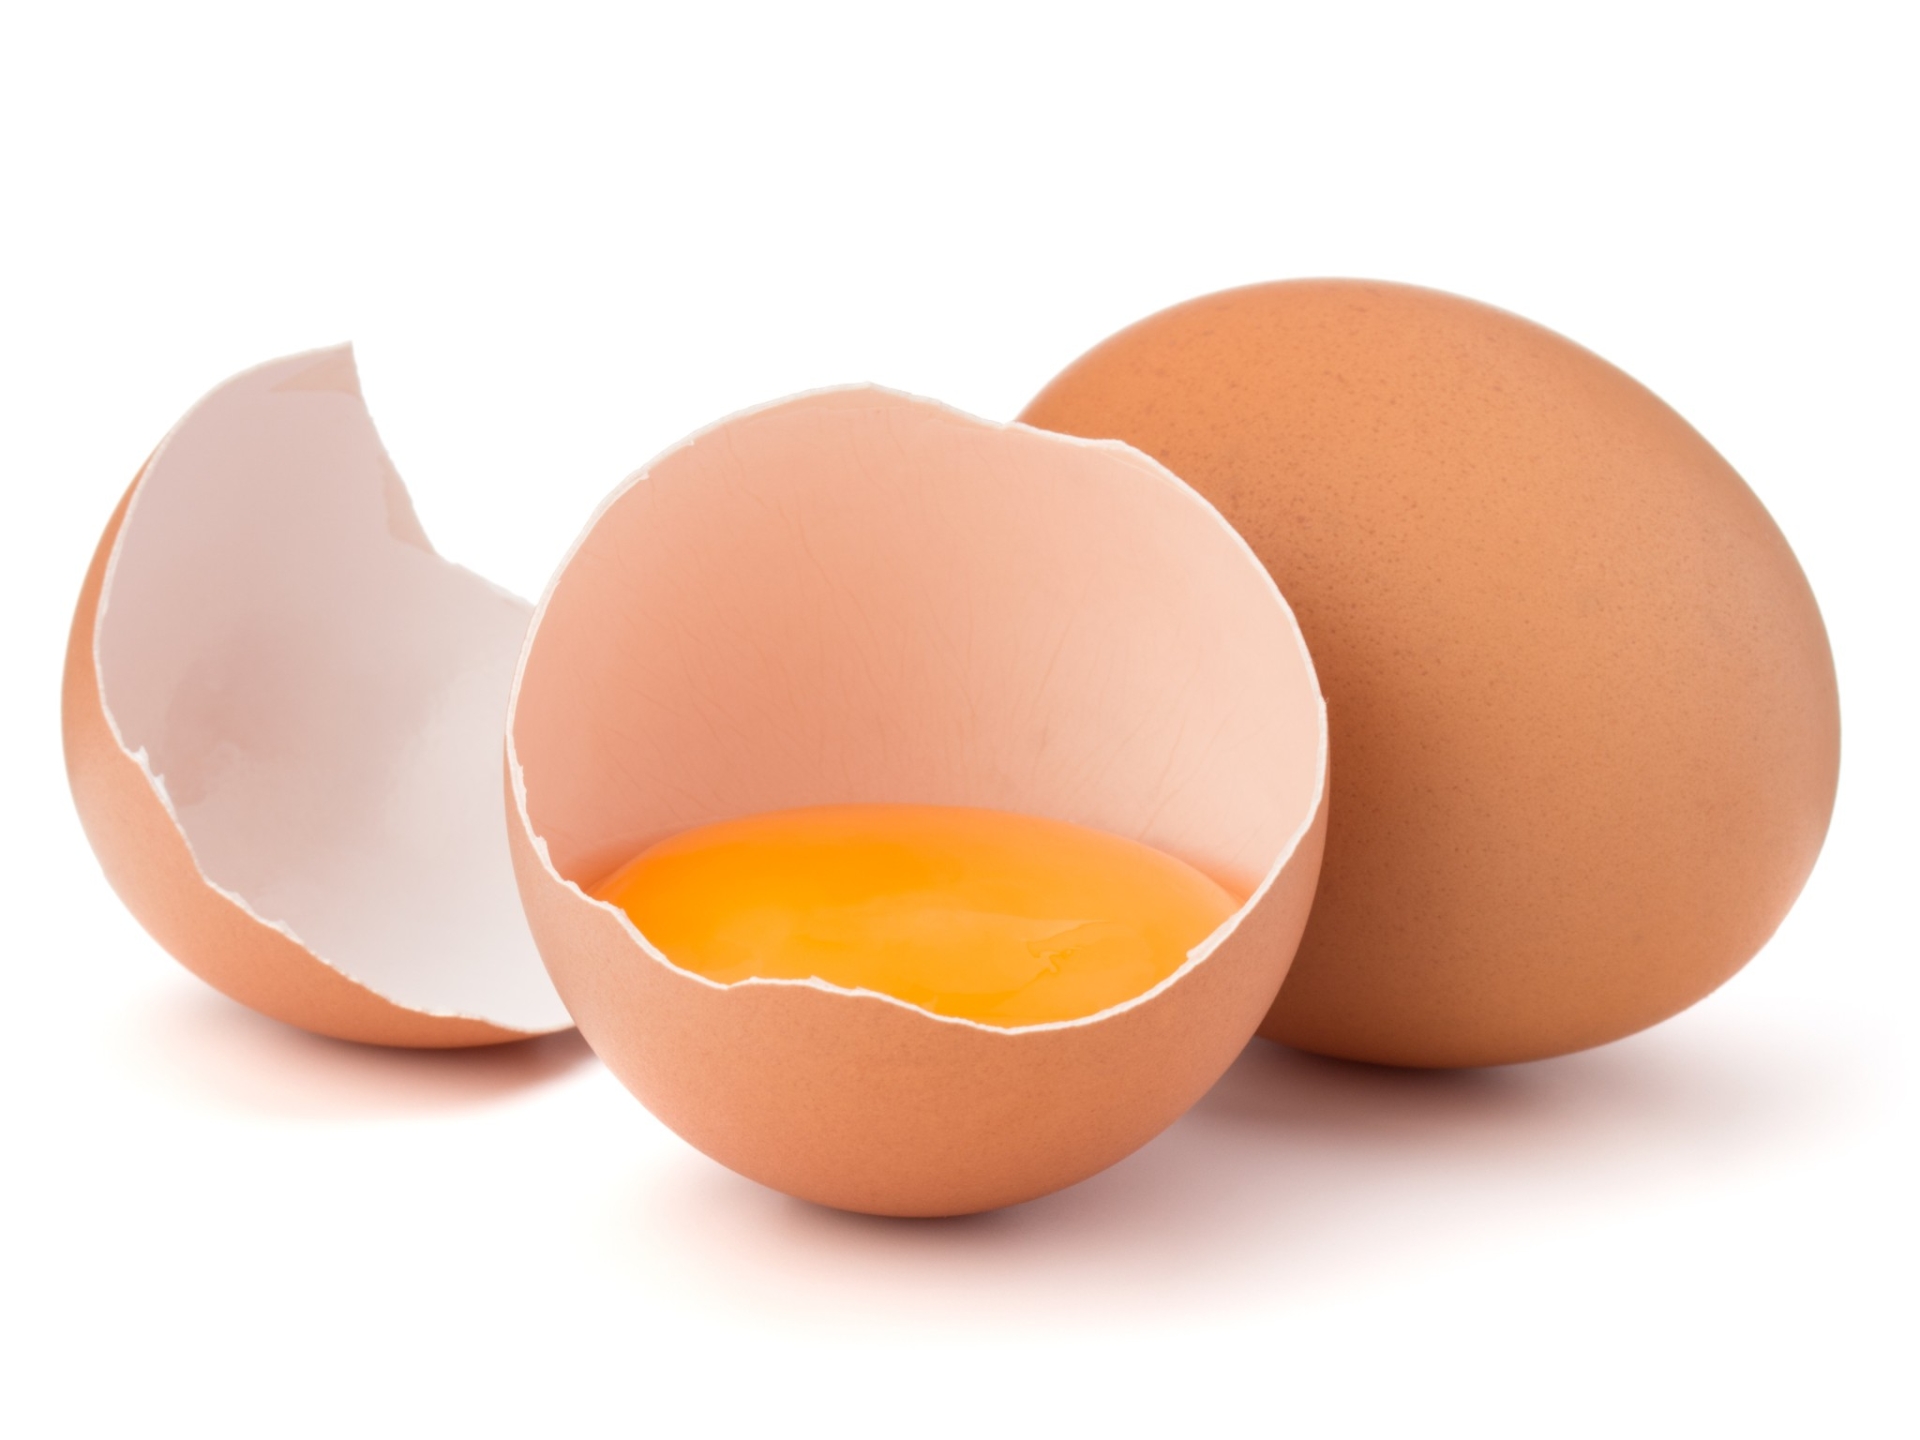 Comment la coquille de l’œuf se forme-t-elle ?